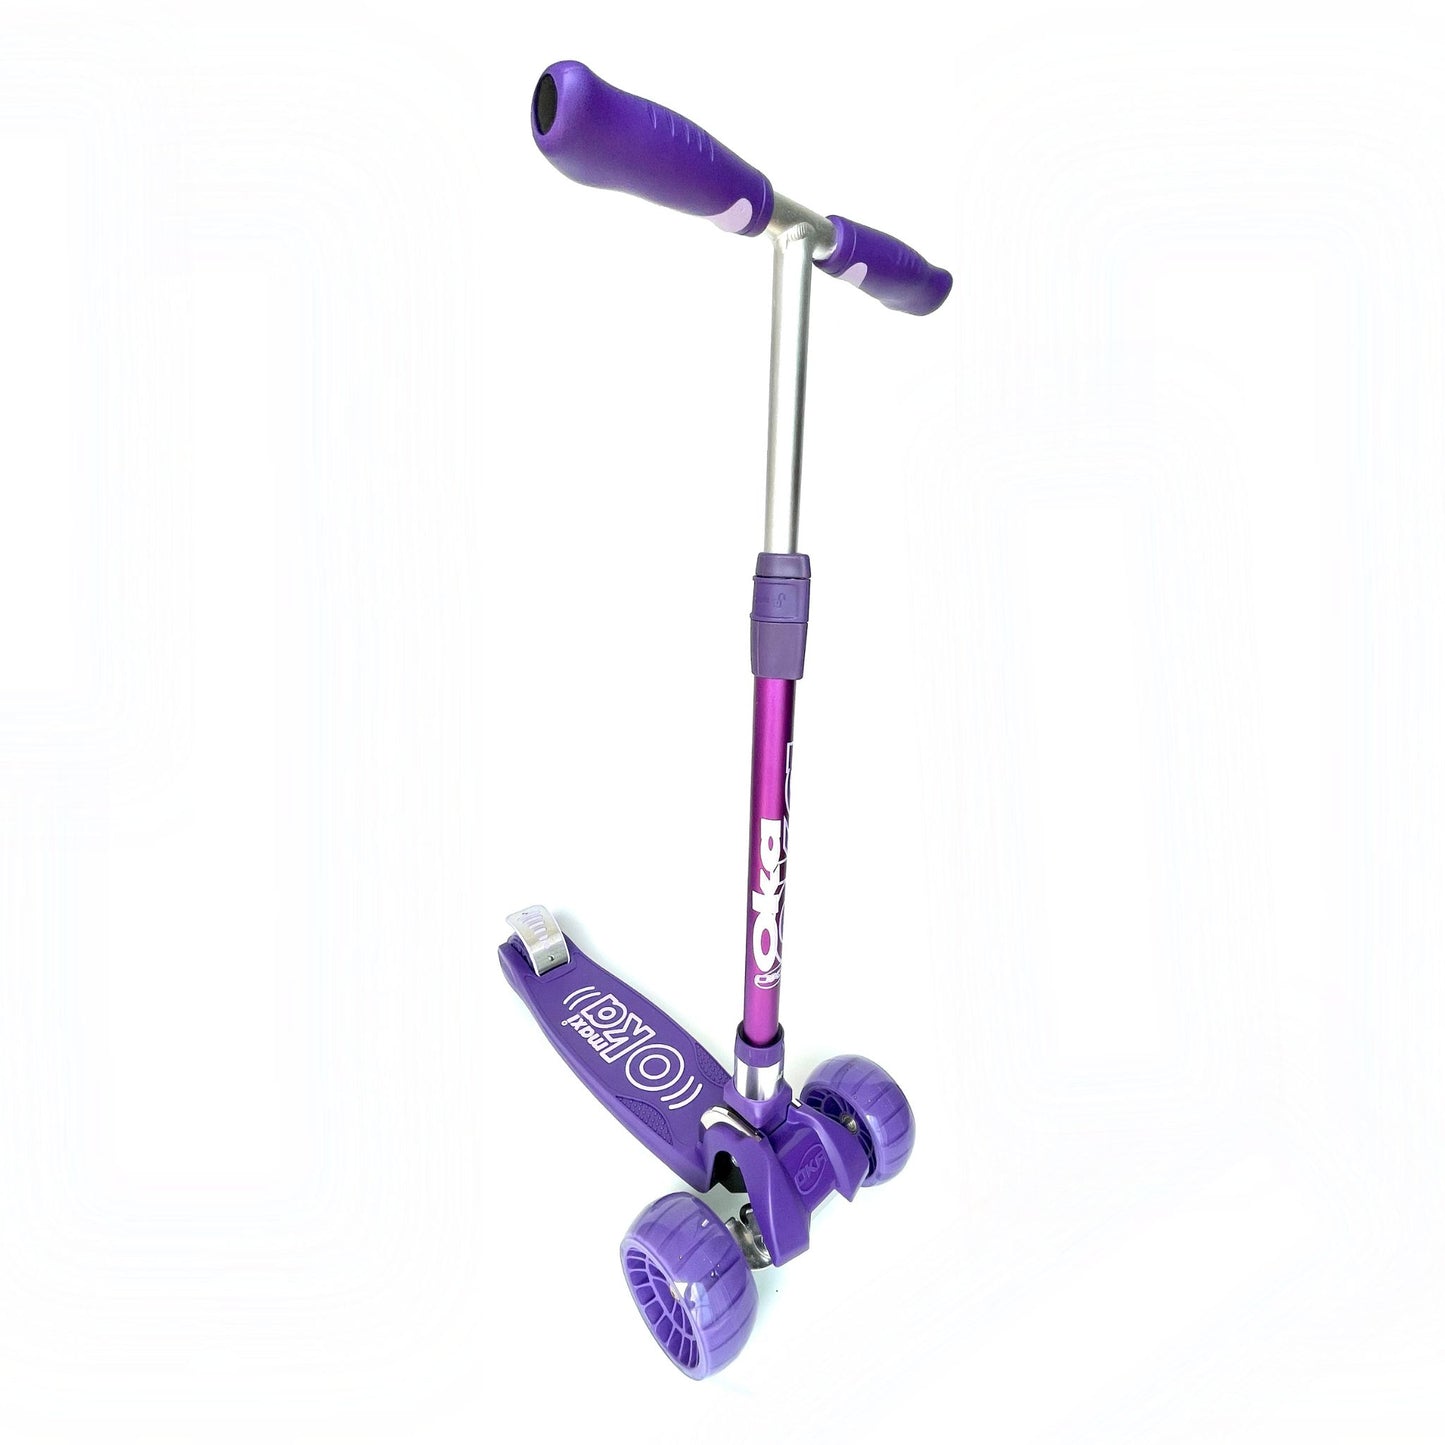 scooter de tres ruedas color purpura con luces en las ruedas